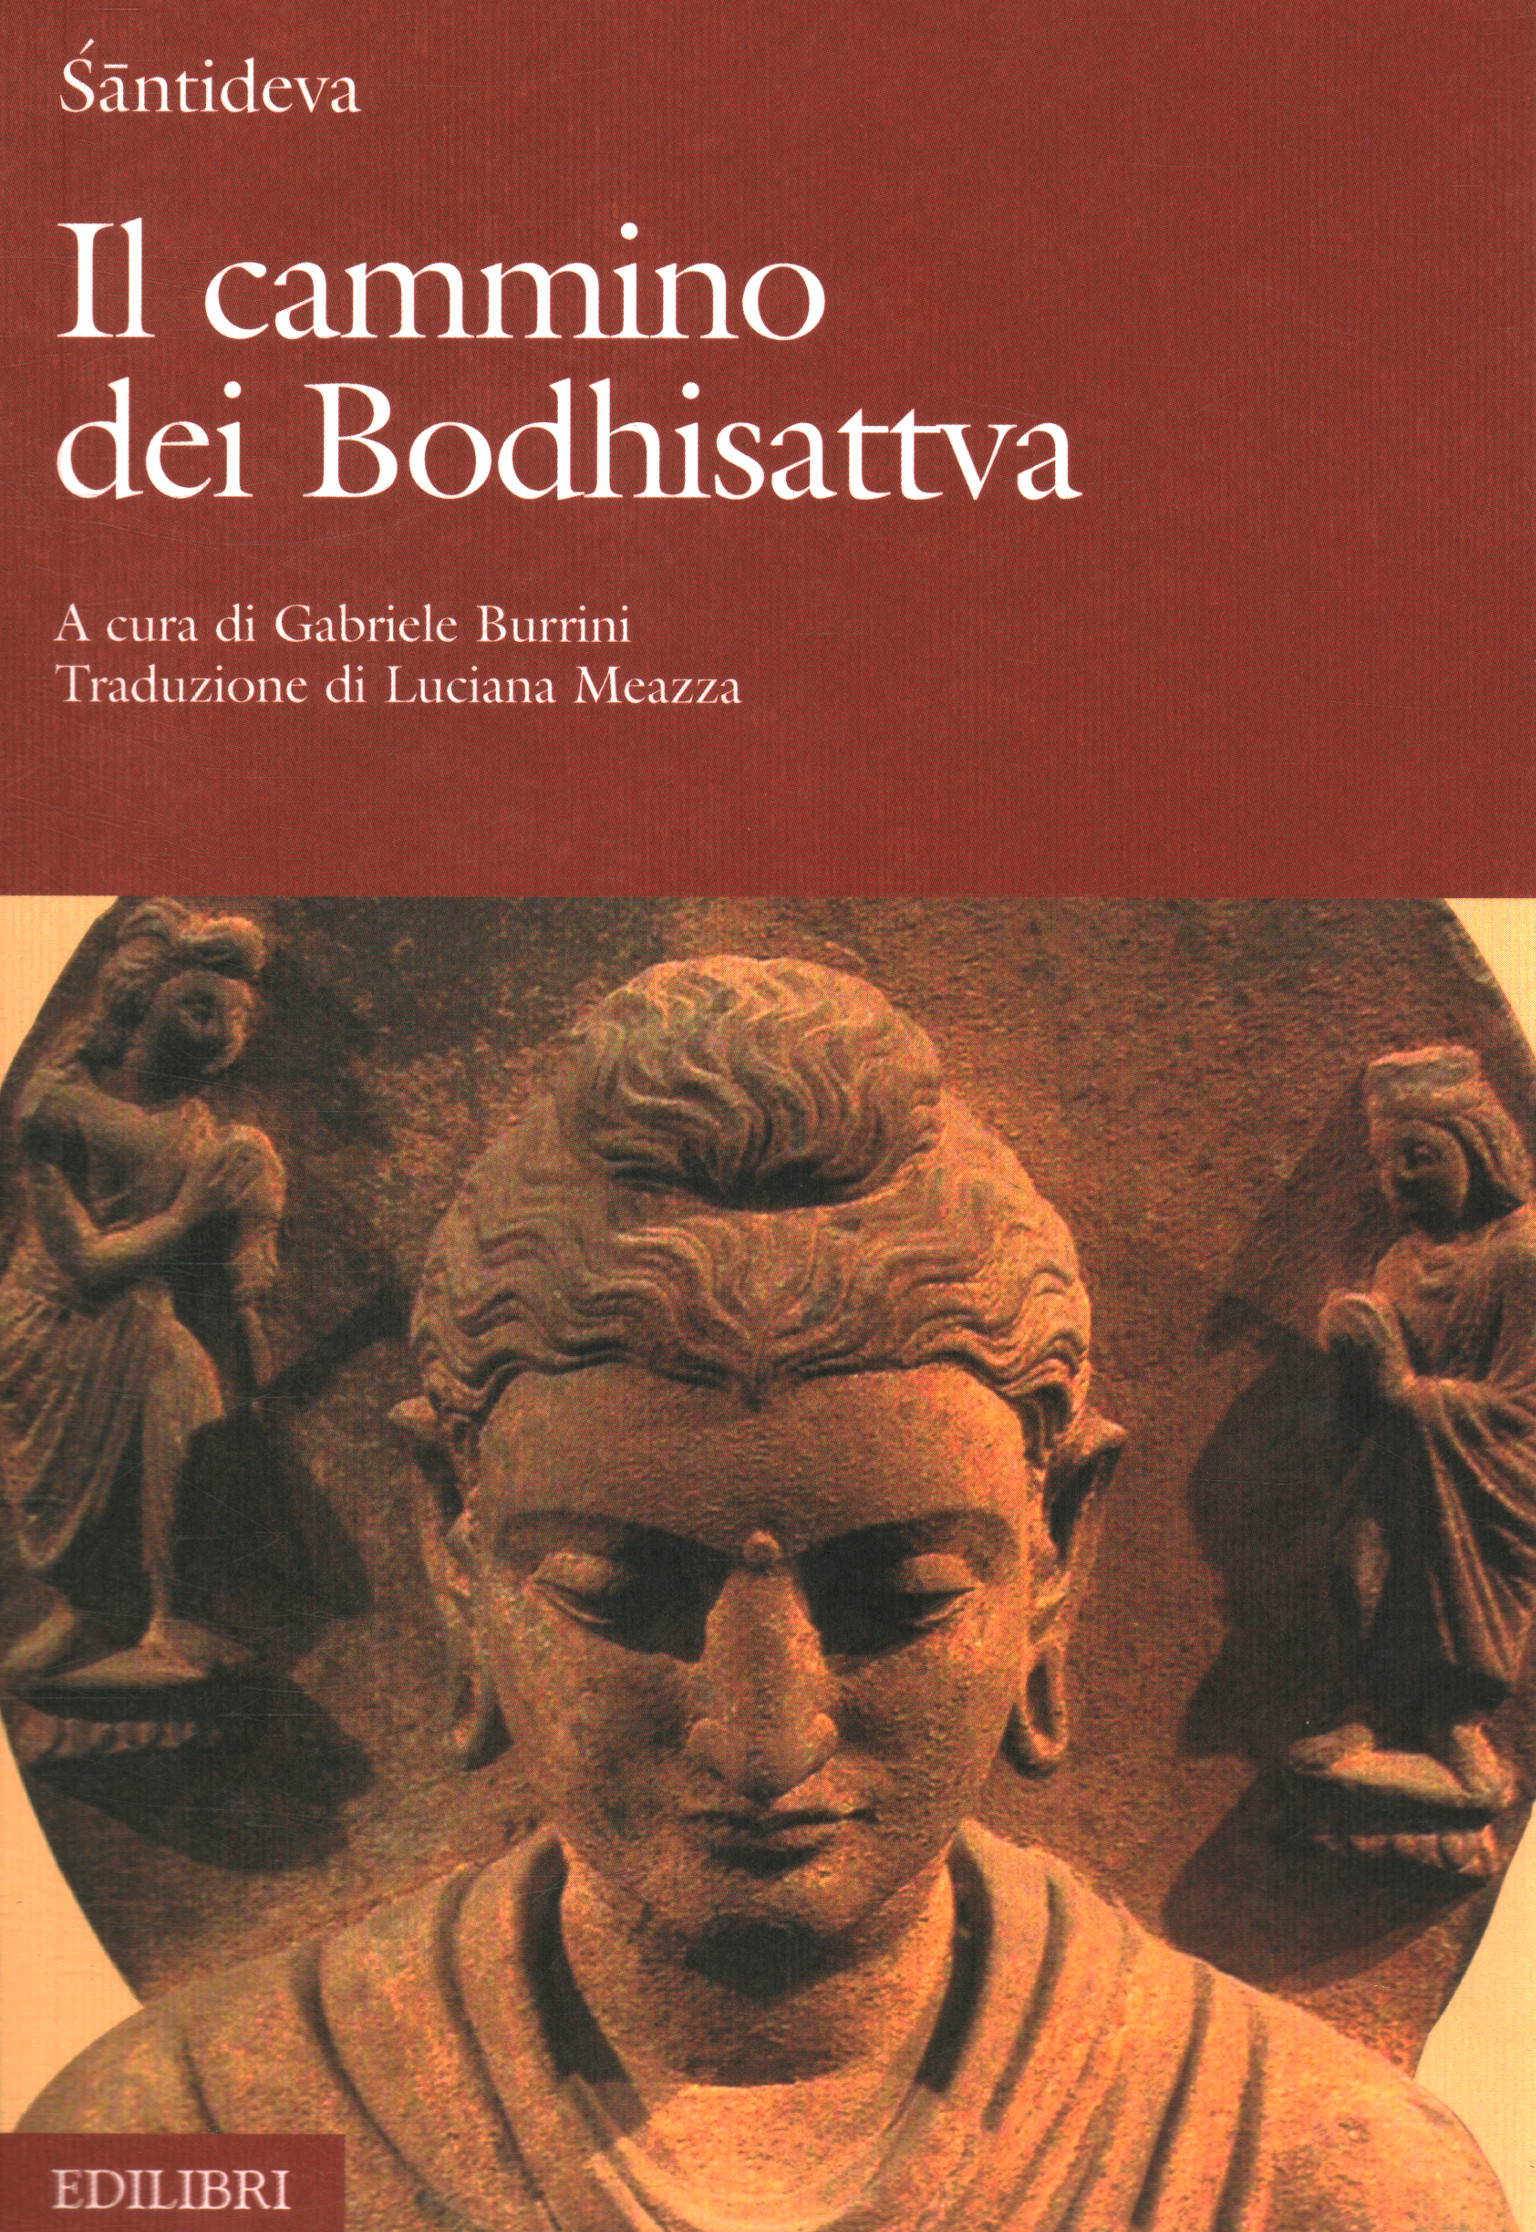 Der Weg der Bodhisattvas